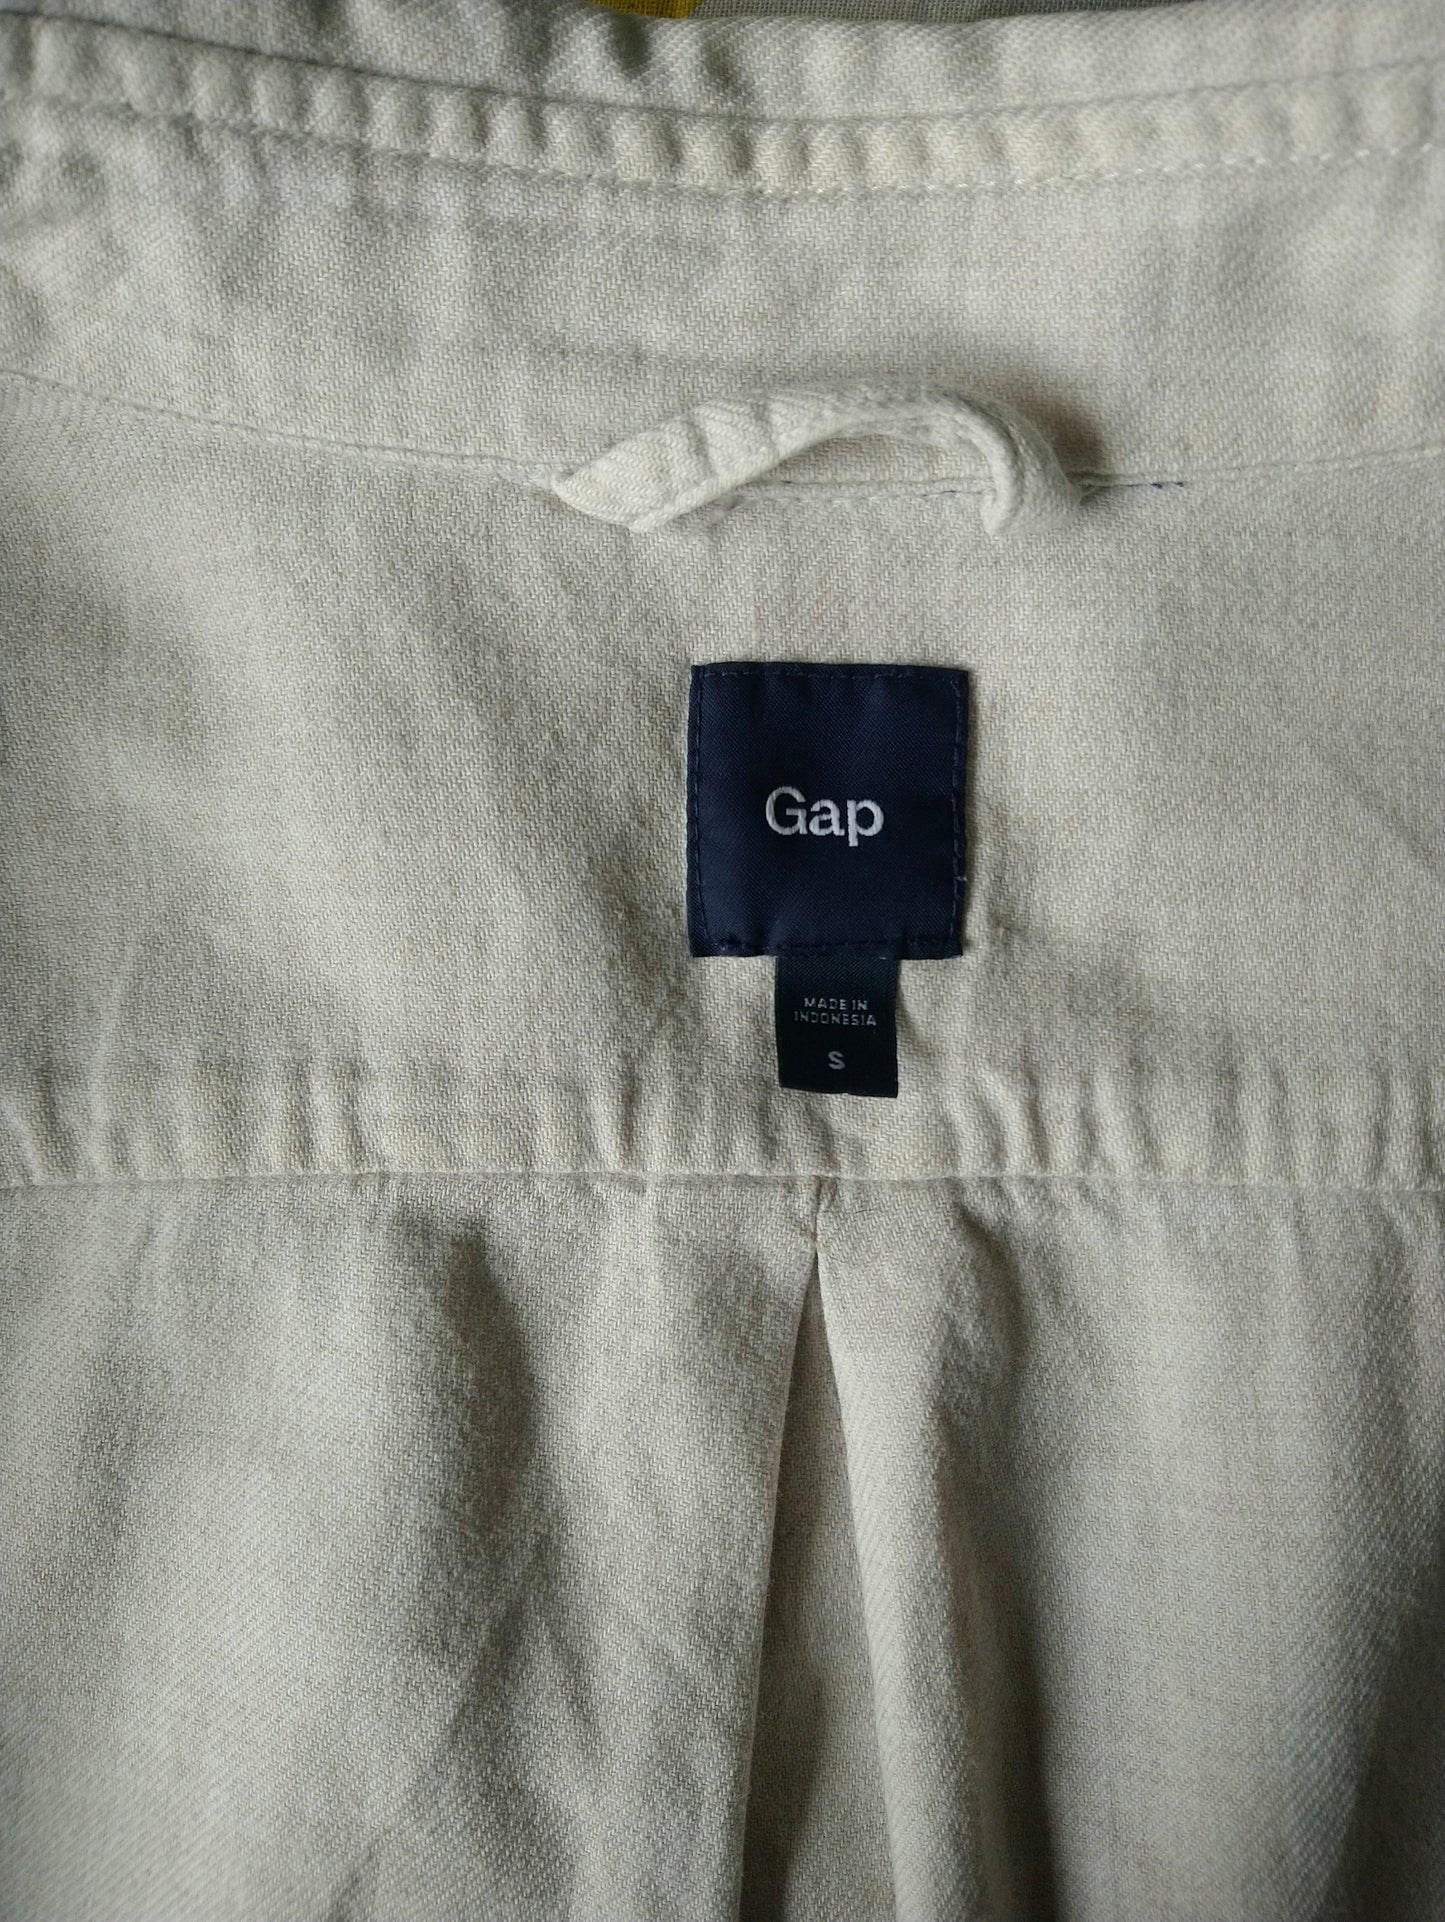 Gap shirt. Beige mixed. Size S / M.